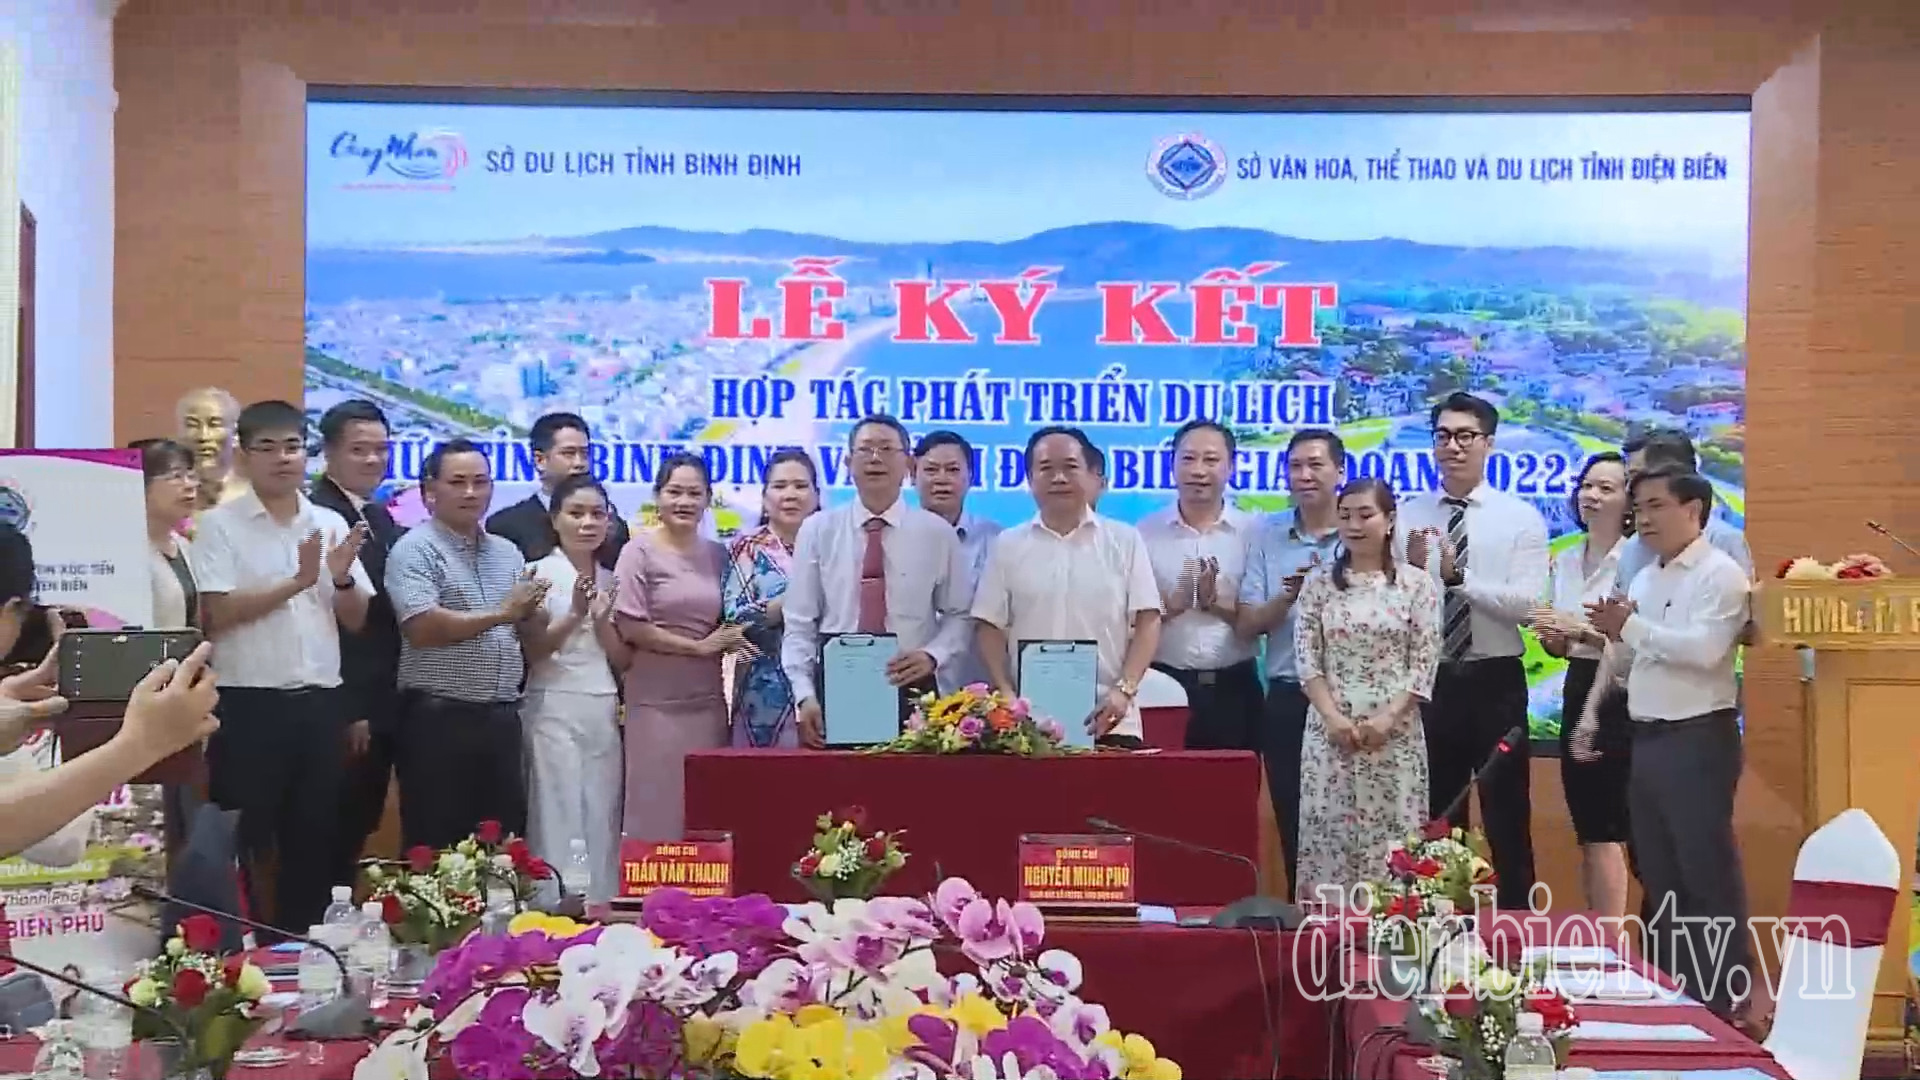 2 tỉnh Điện Biên và Bình Định ký kết Chương trình hợp tác phát triển du lịch giai đoạn 2022 - 2026.